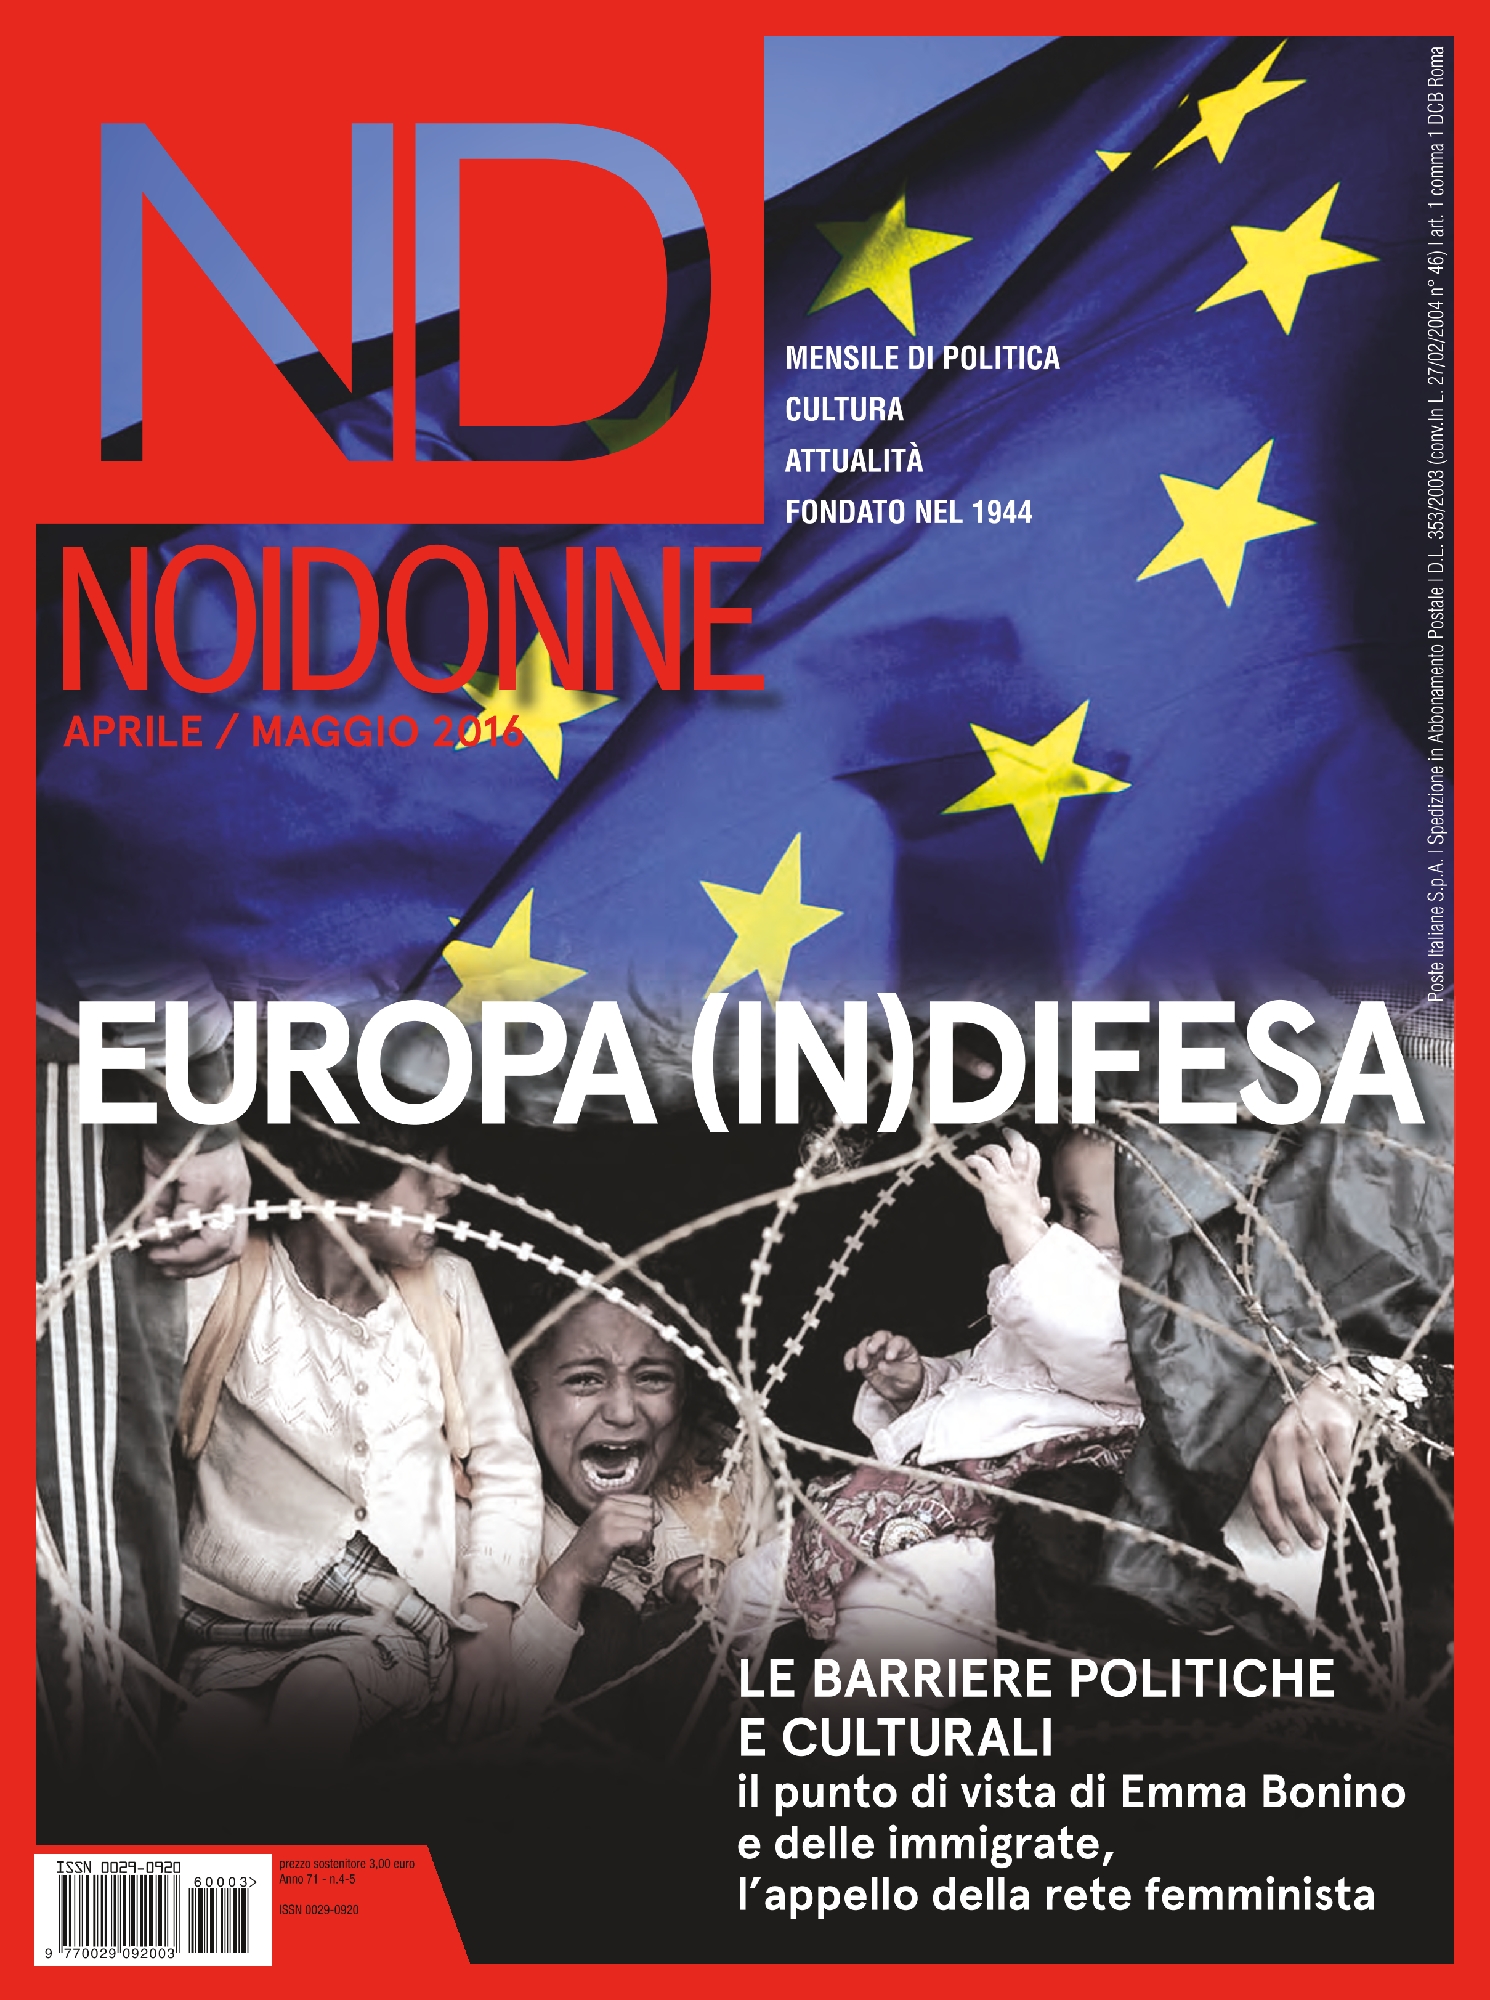 Foto: Europa (in)difesa. Barriere politiche e culturali